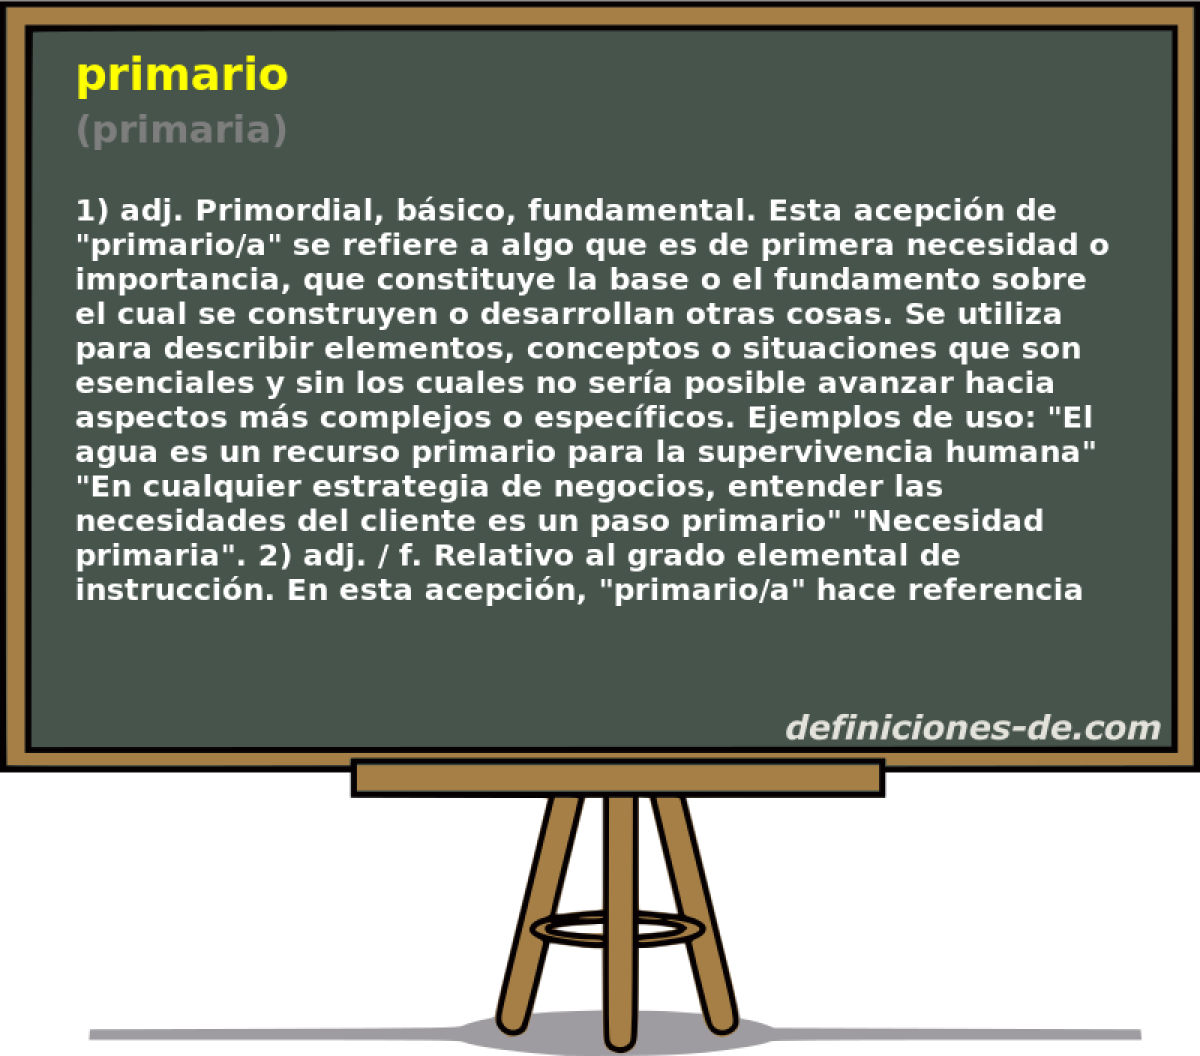 primario (primaria)